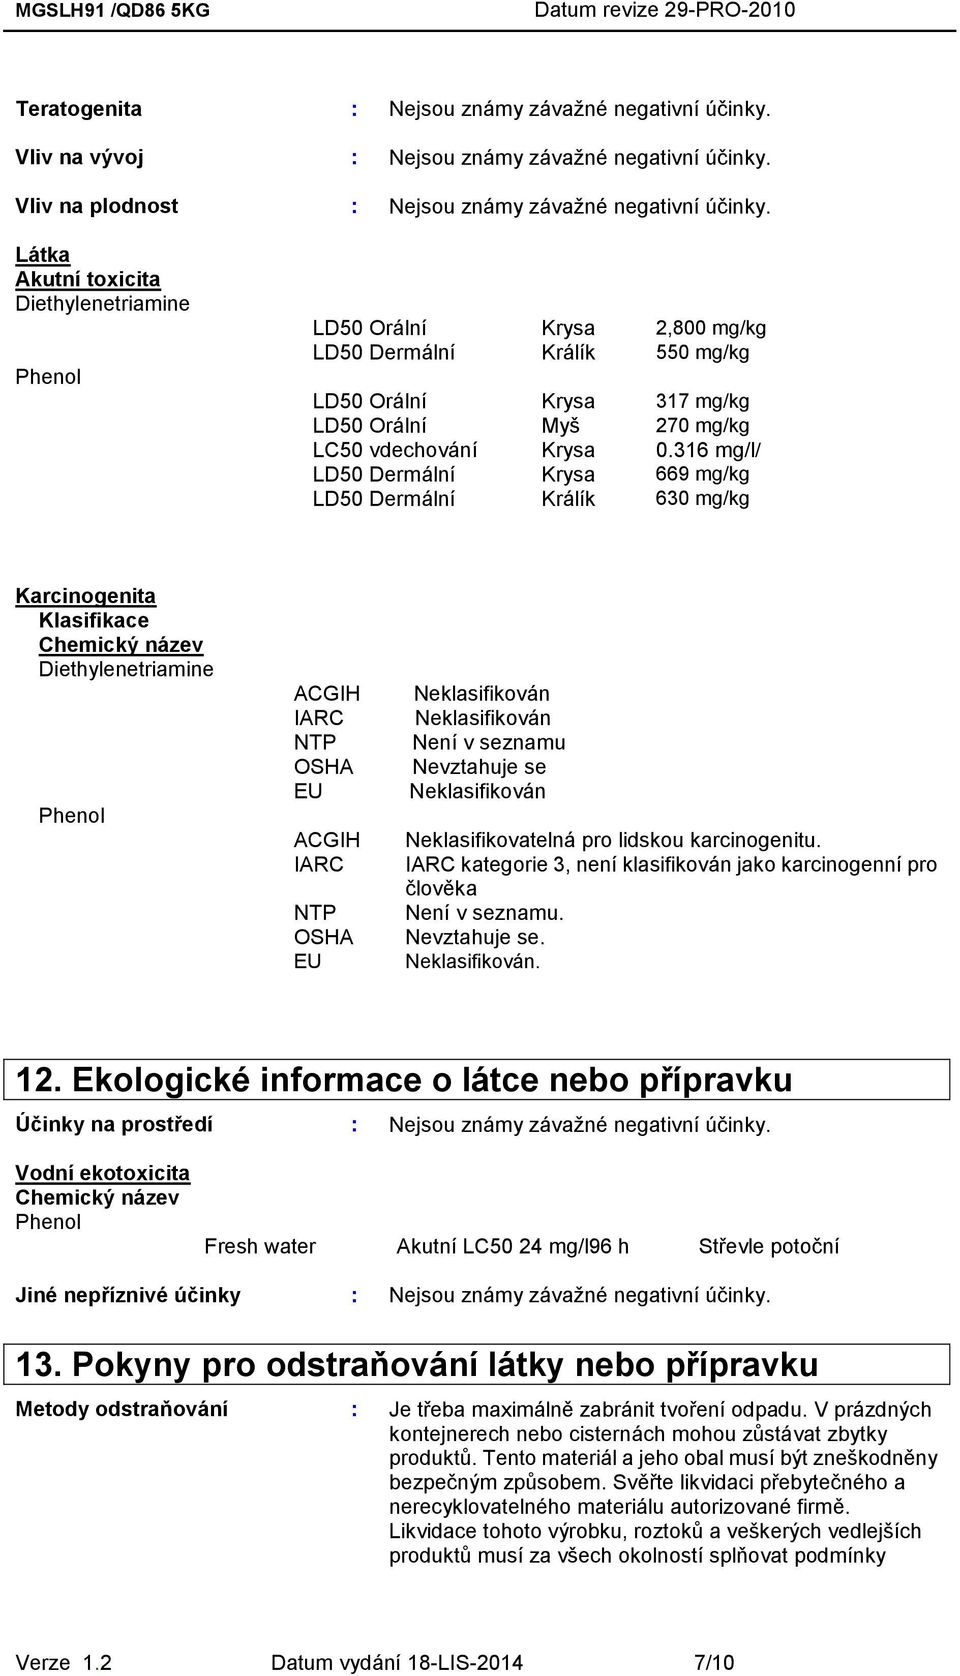 316 mg/l/ LD50 Dermální Krysa 669 mg/kg LD50 Dermální Králík 630 mg/kg Karcinogenita Klasifikace Chemický název Diethylenetriamine Phenol ACGIH IARC NTP OSHA EU ACGIH IARC NTP OSHA EU Neklasifikován